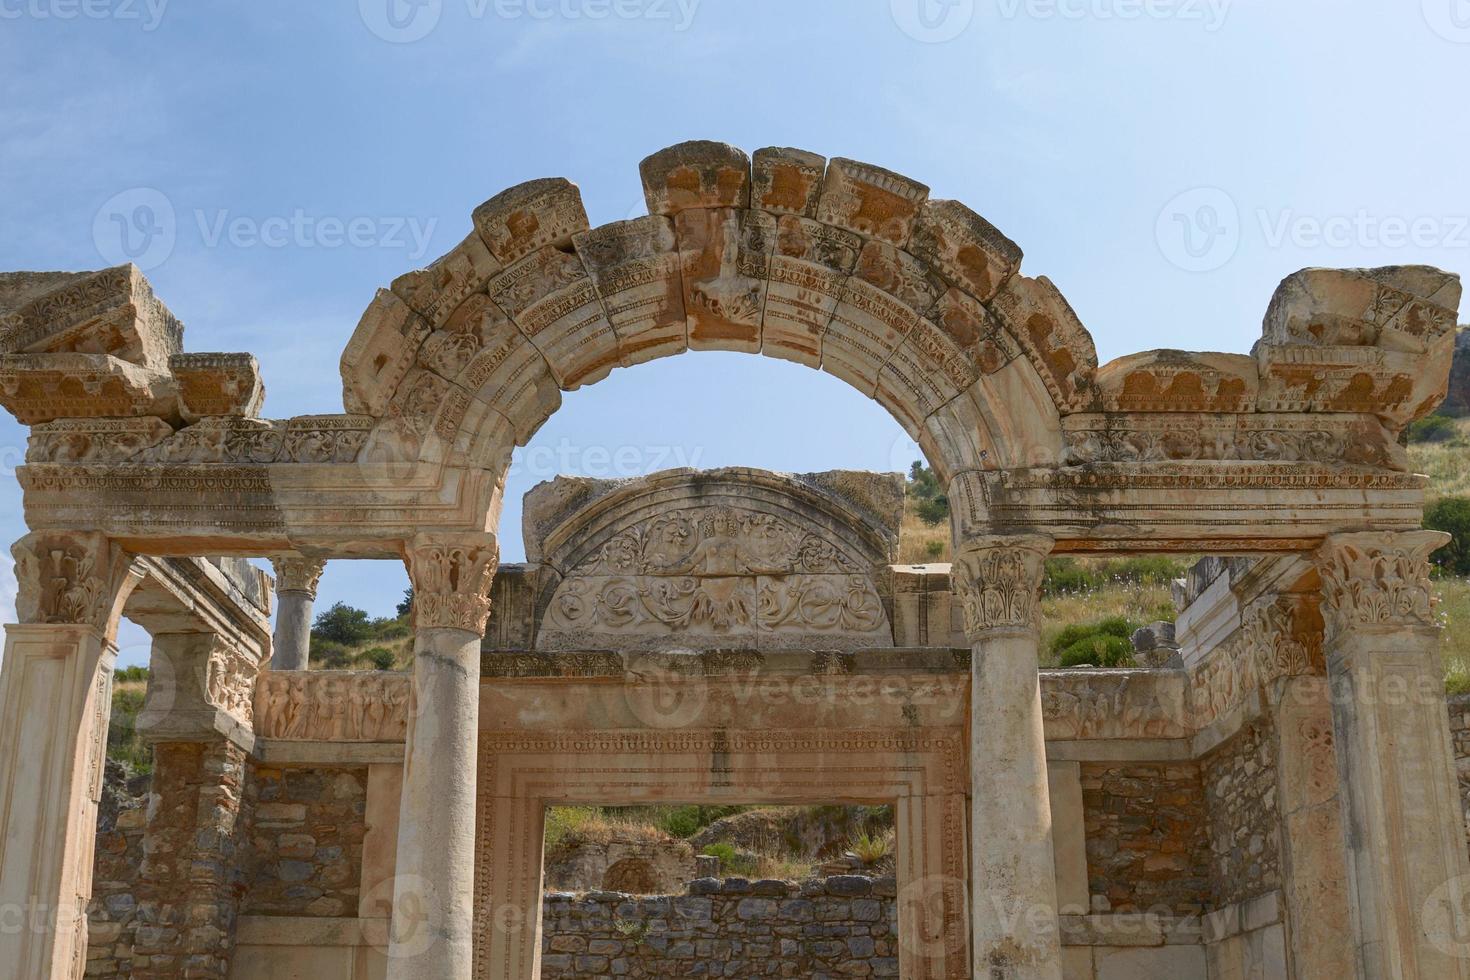 o templo de hadrian na antiga cidade de éfeso, na turquia foto